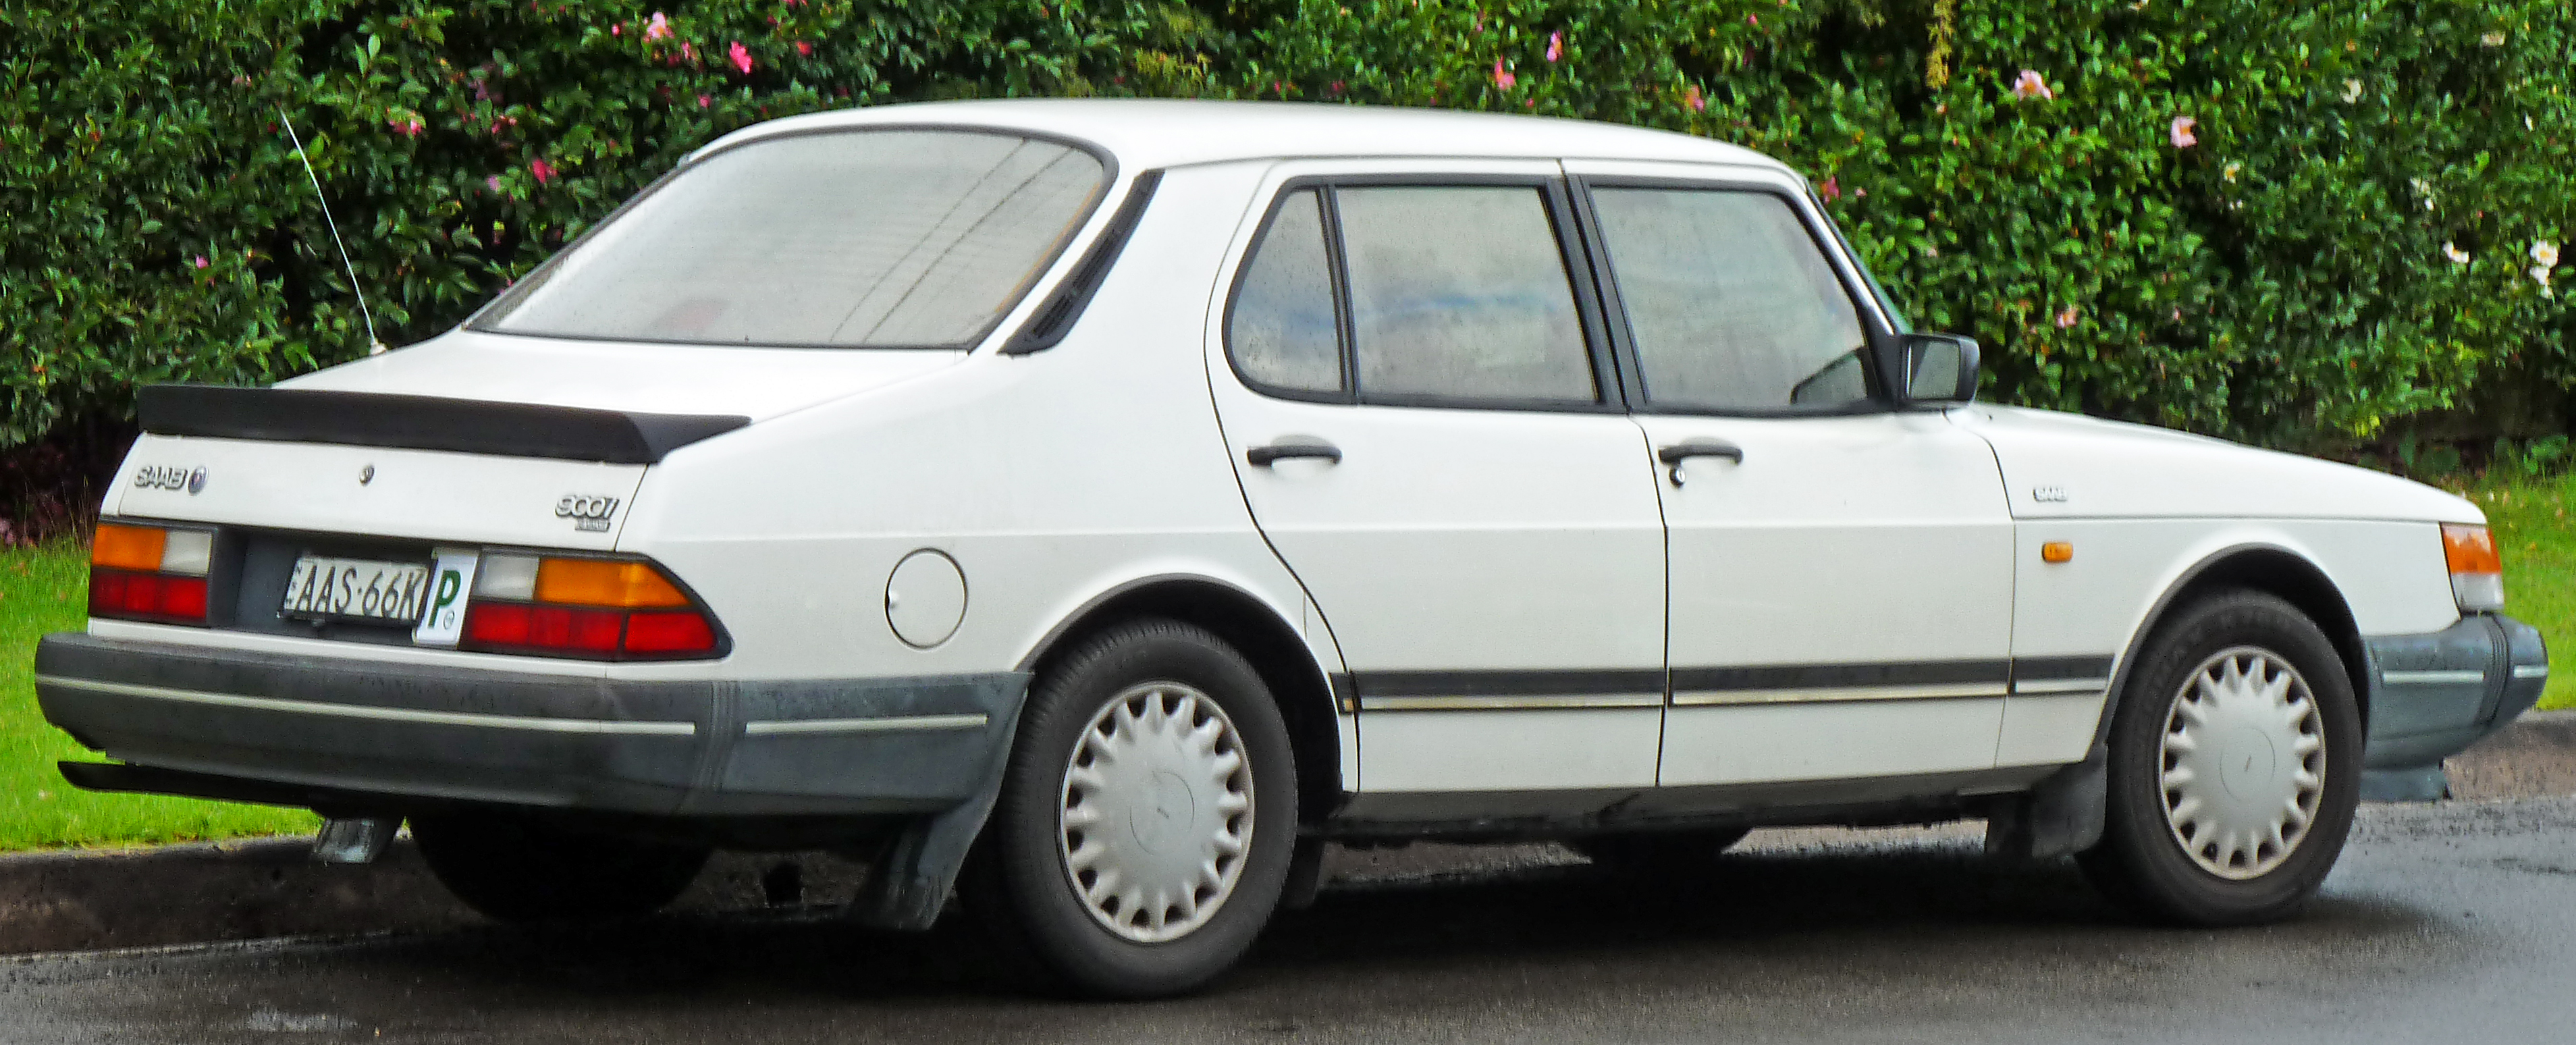 File:1987-1993 Saab 900i sedan (2011-04-28).jpg - Wikimedia Commons